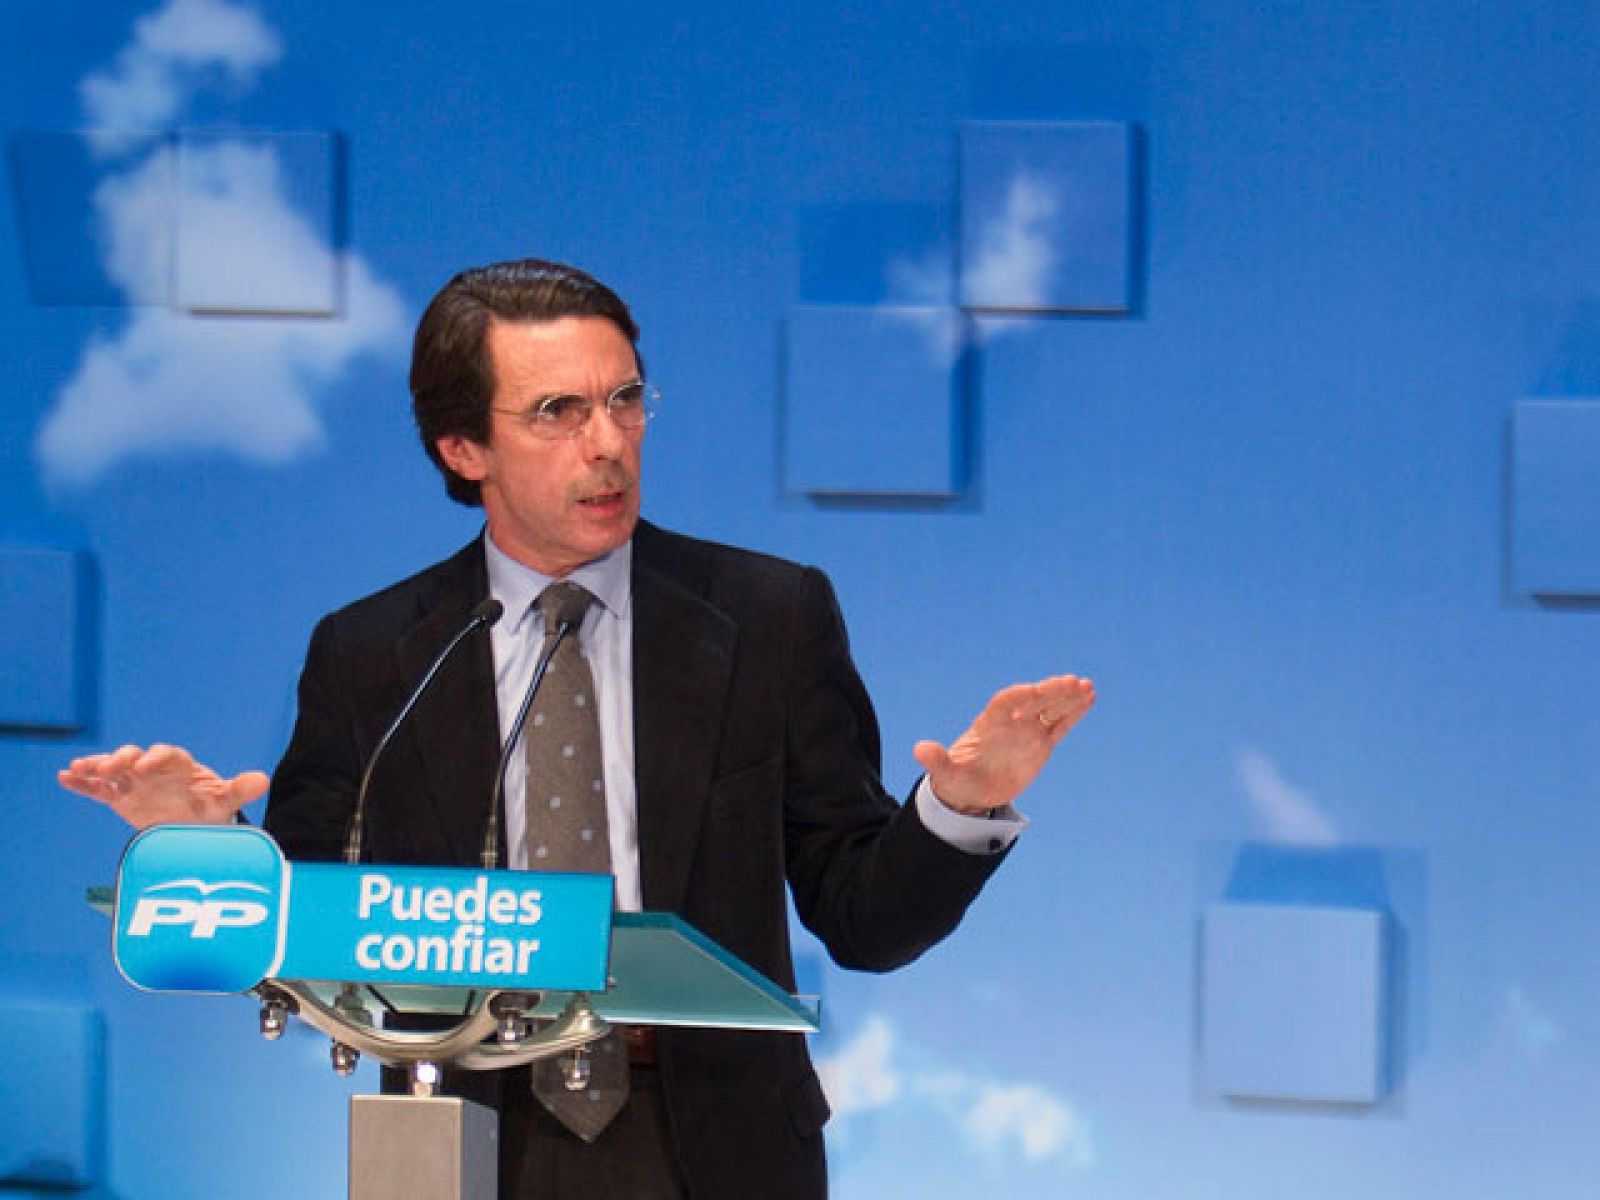 La secretaria general del PP, Maria Dolores de Cospedal, ha elogiado la gestión de José María Aznar frente al actual gobierno de Zapatero que ha dado por agotado.